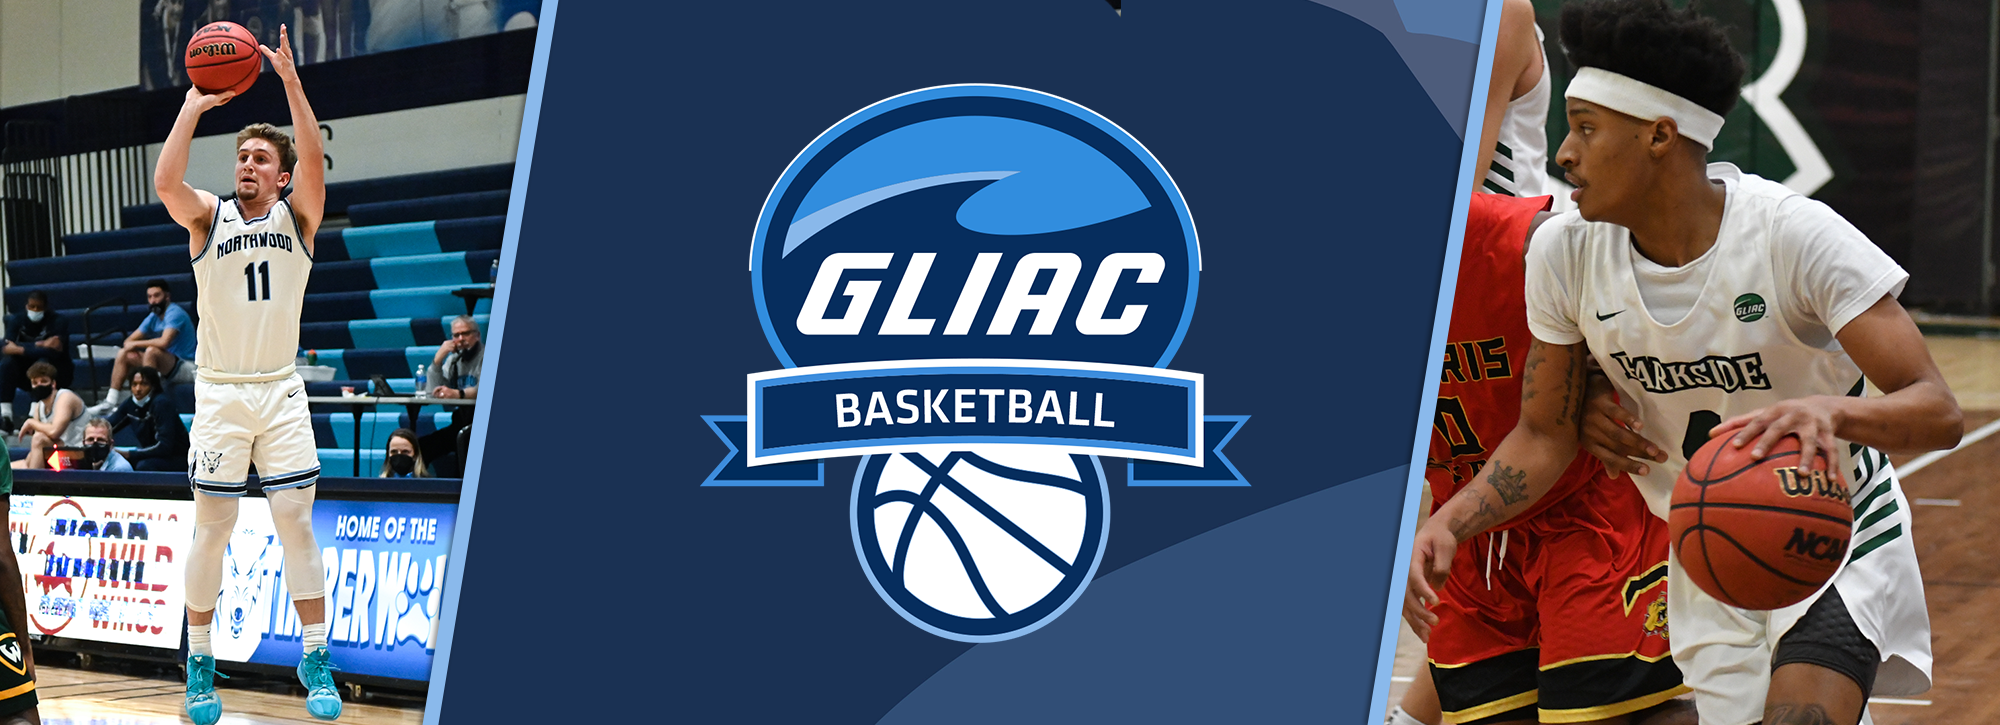 UWP's Croft, NU's Ammerman Claim GLIAC Men's Basketball Weekly Honors